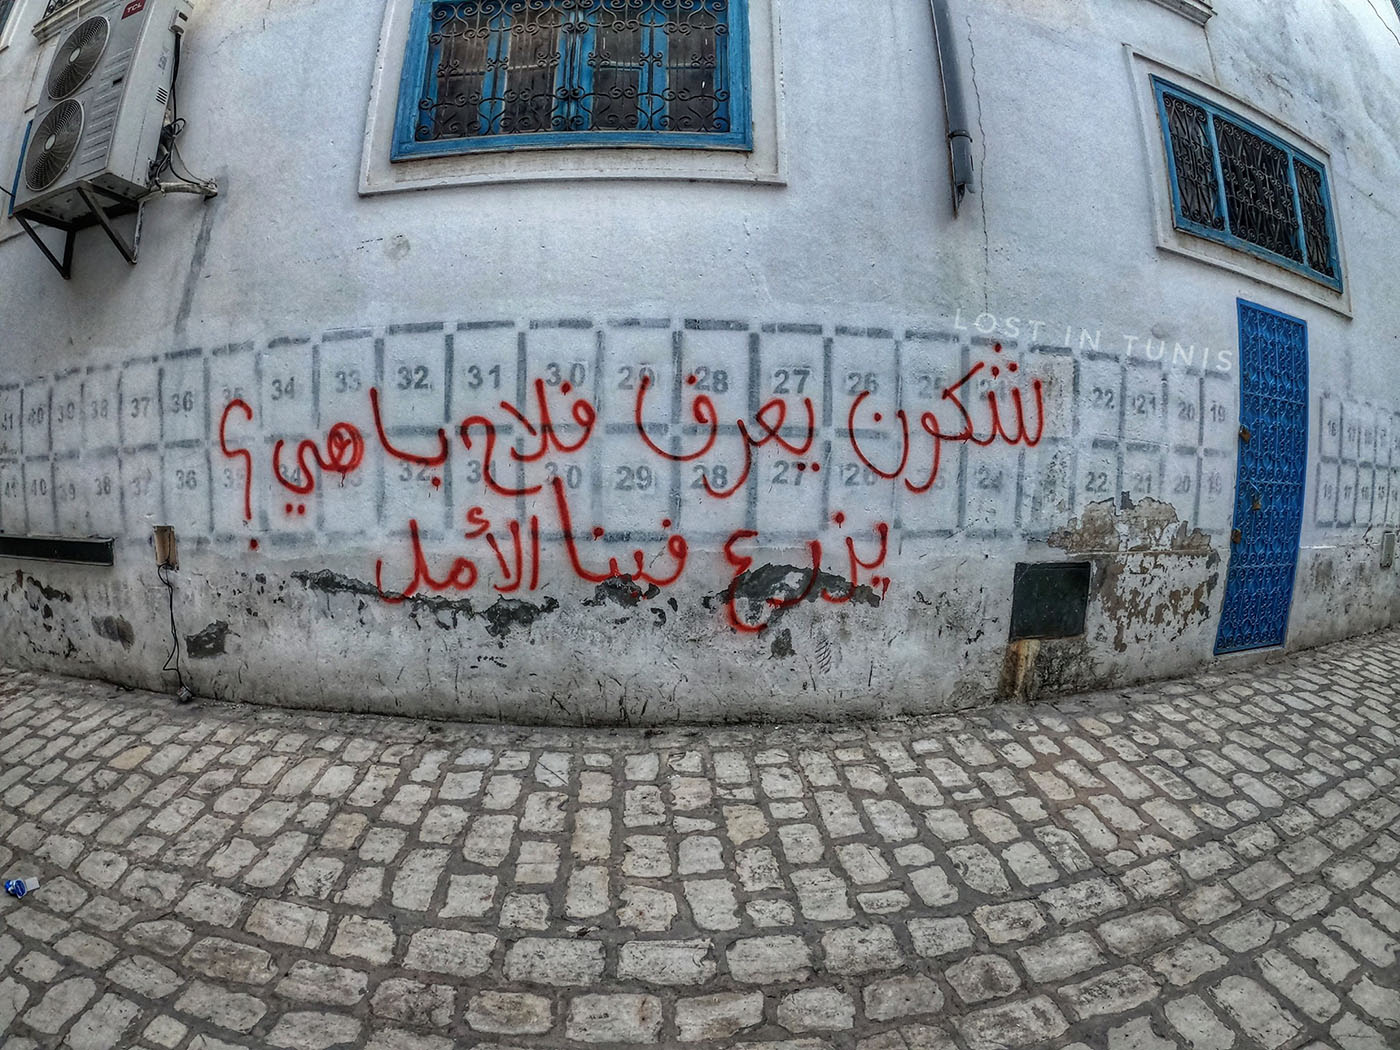 "من يعرف المزارع الجيد؟ لزرع الأمل فينا" (الصورة ضائع في تونس).